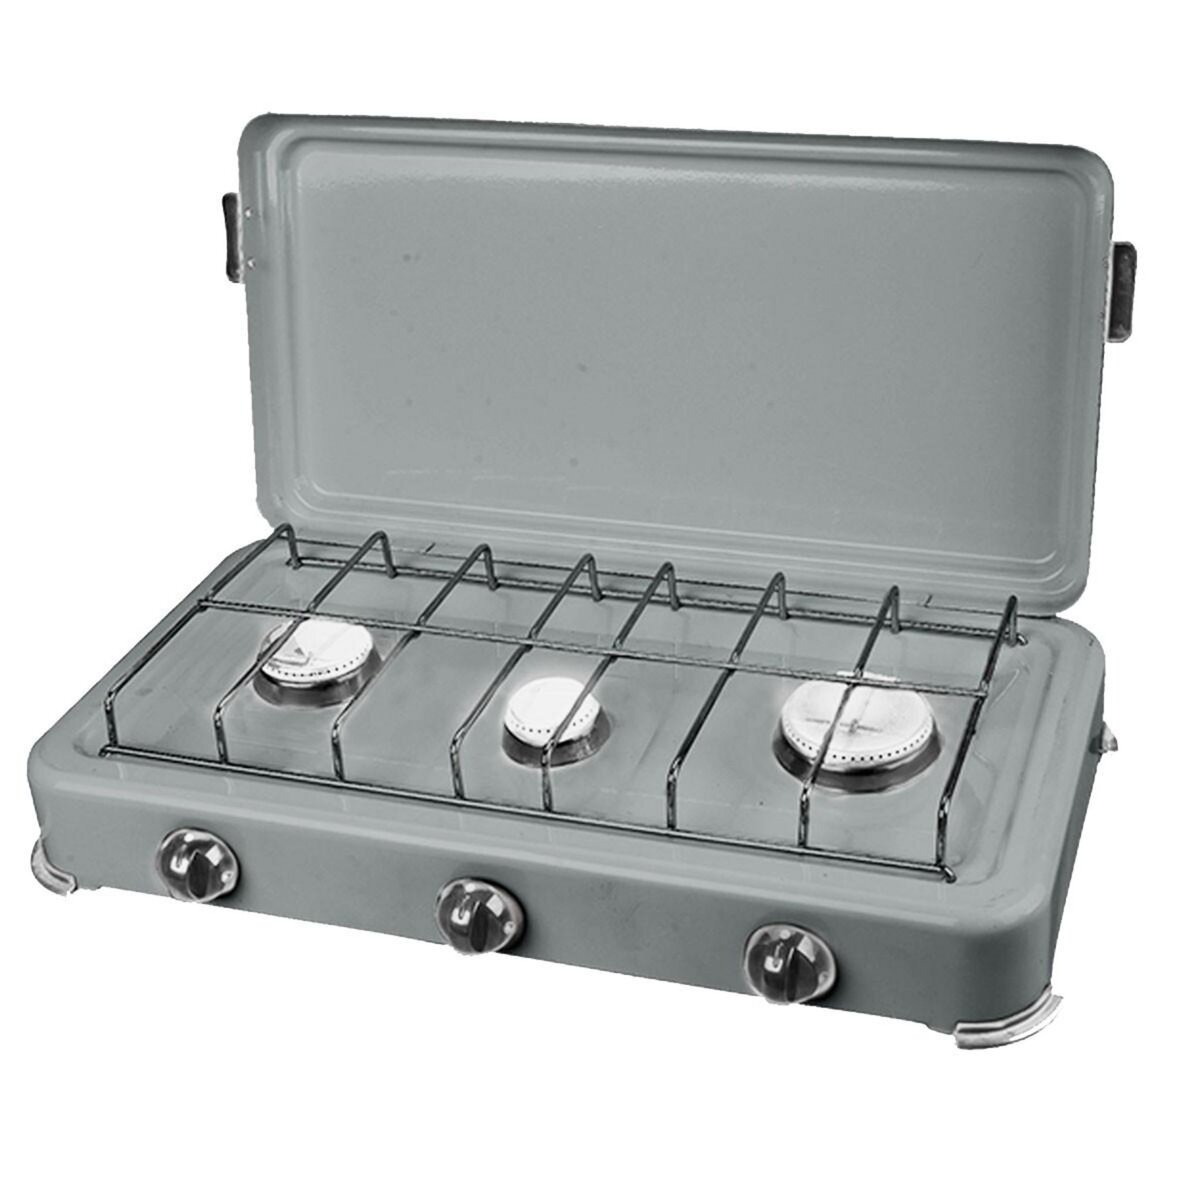 Proweltek Plaque de cuisson gaz portable 3 feux 3000W SILVER 3 Rechaud gaz butane/Propane Bruleurs inox Couvercle amovible